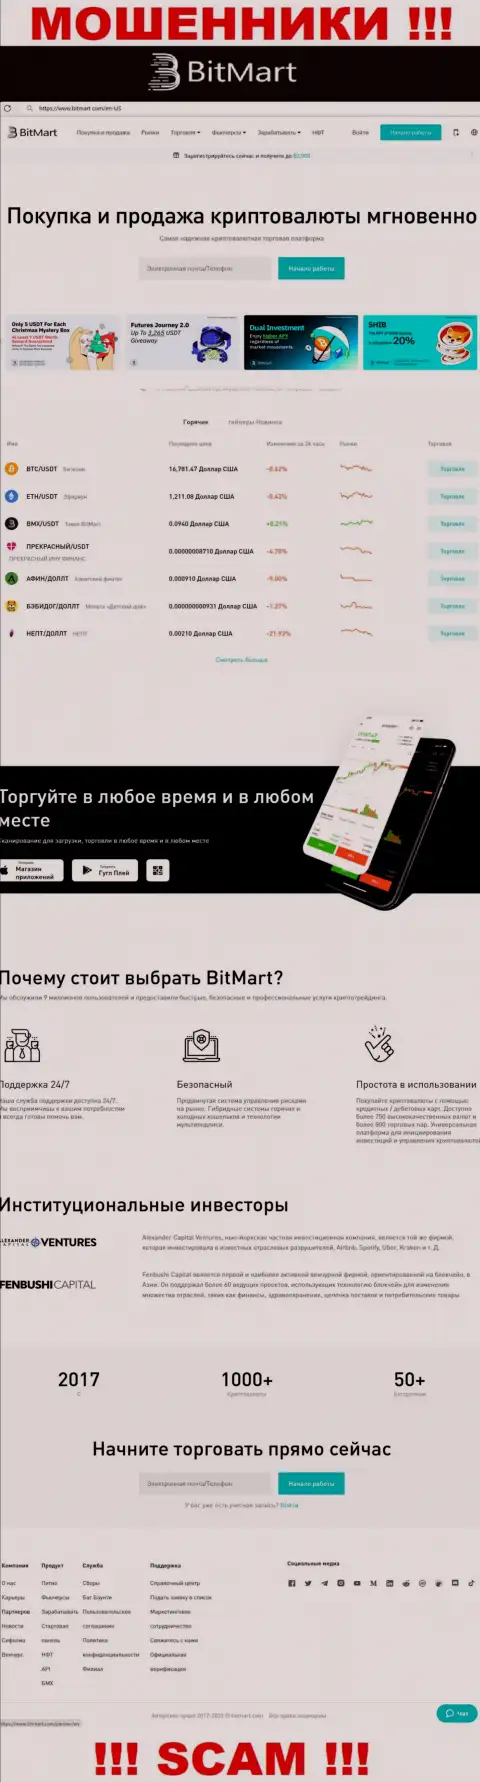 Вид официального информационного сервиса жульнической компании BitMart